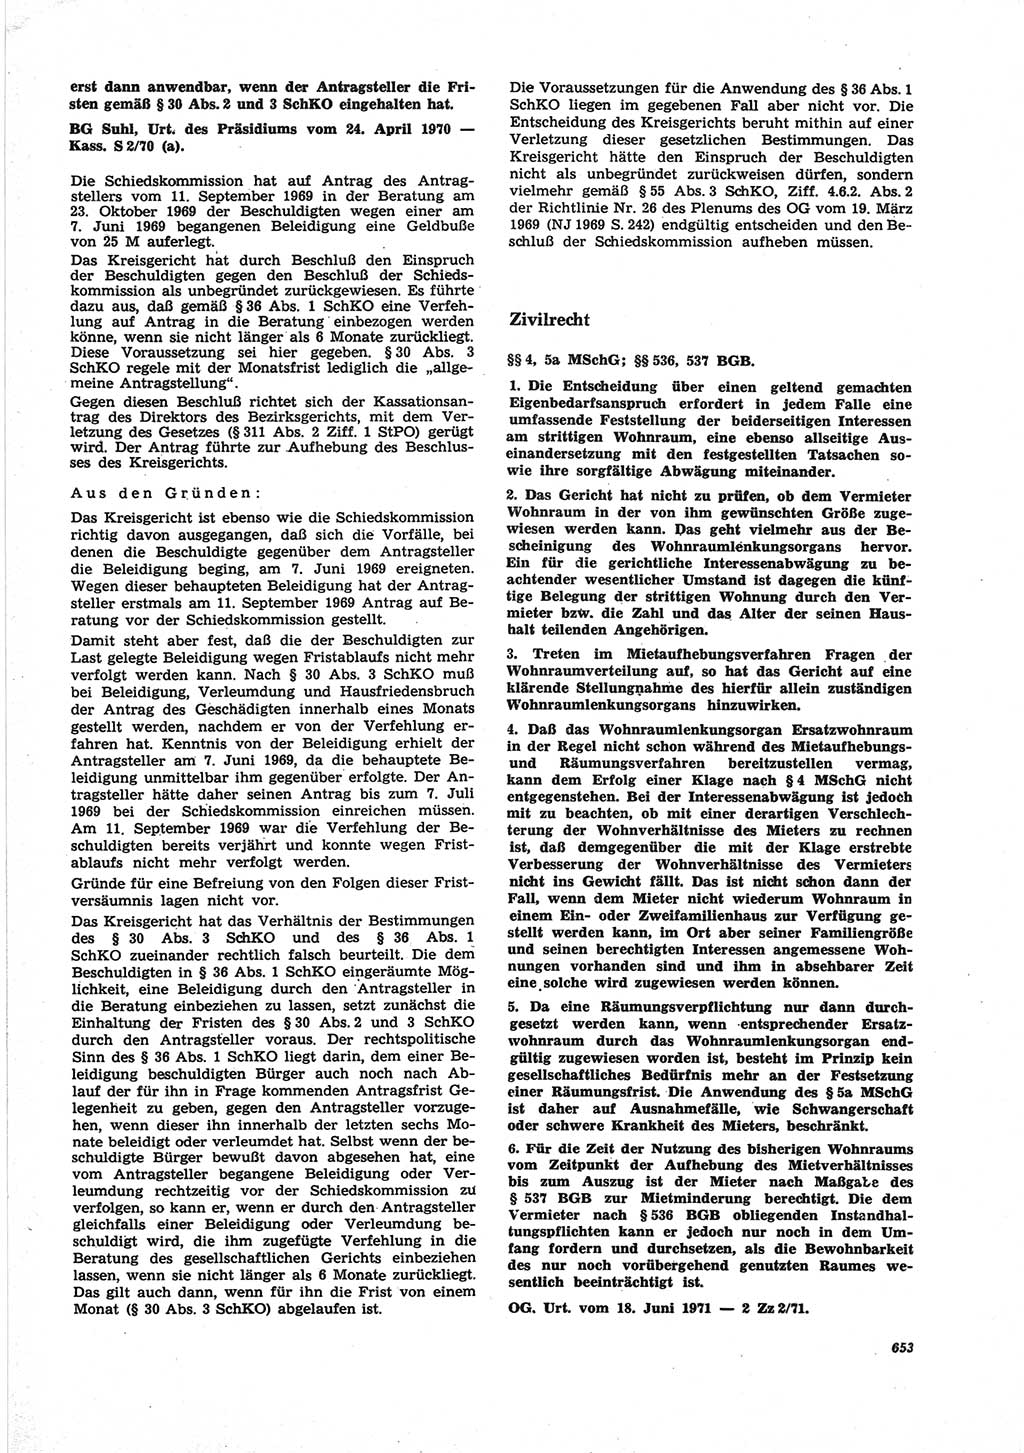 Neue Justiz (NJ), Zeitschrift für Recht und Rechtswissenschaft [Deutsche Demokratische Republik (DDR)], 25. Jahrgang 1971, Seite 653 (NJ DDR 1971, S. 653)